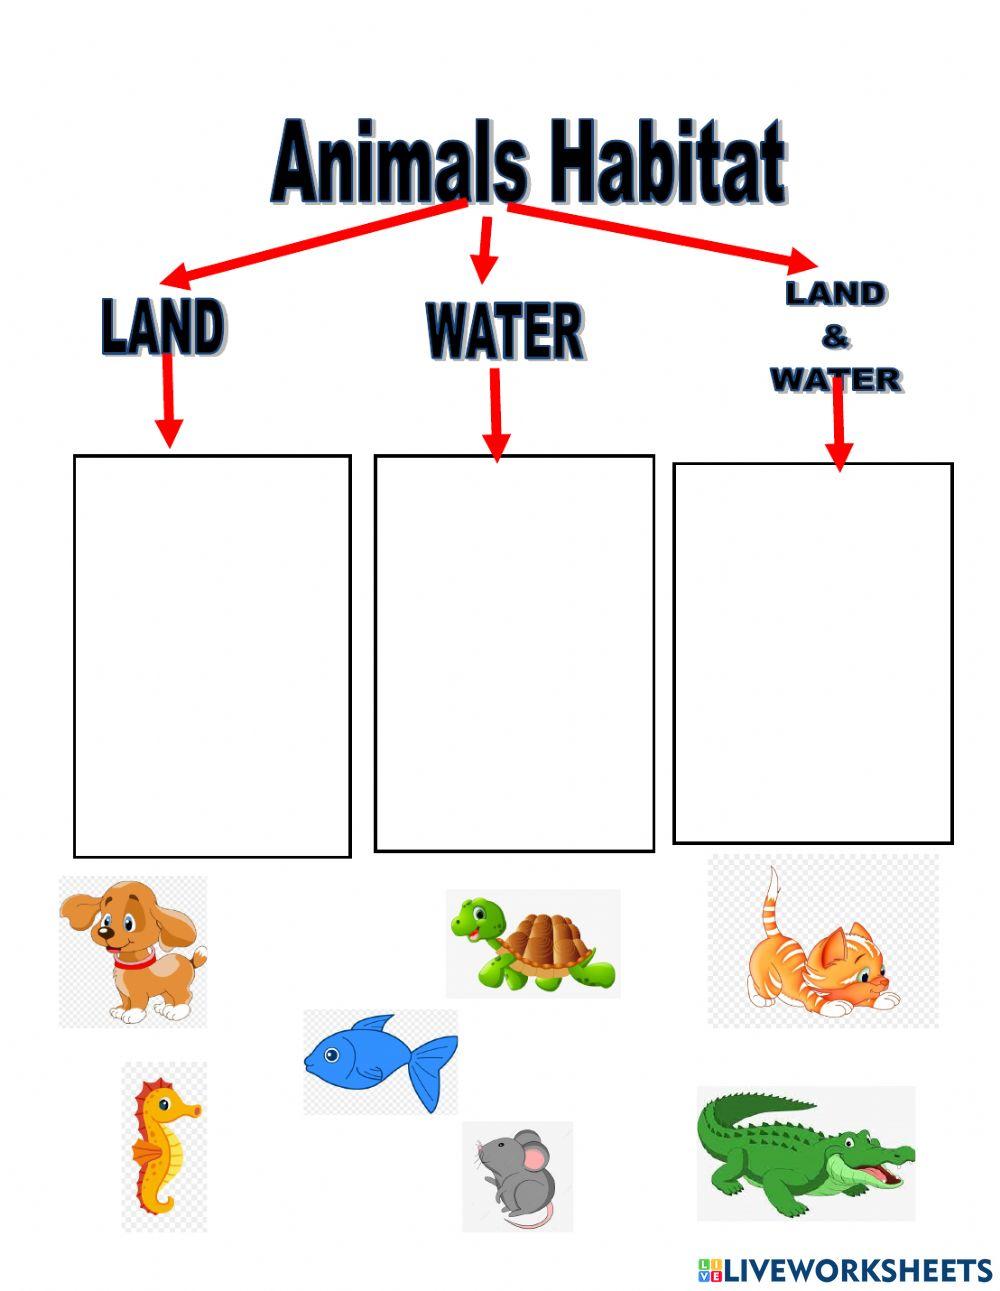 Habitat of ANimals